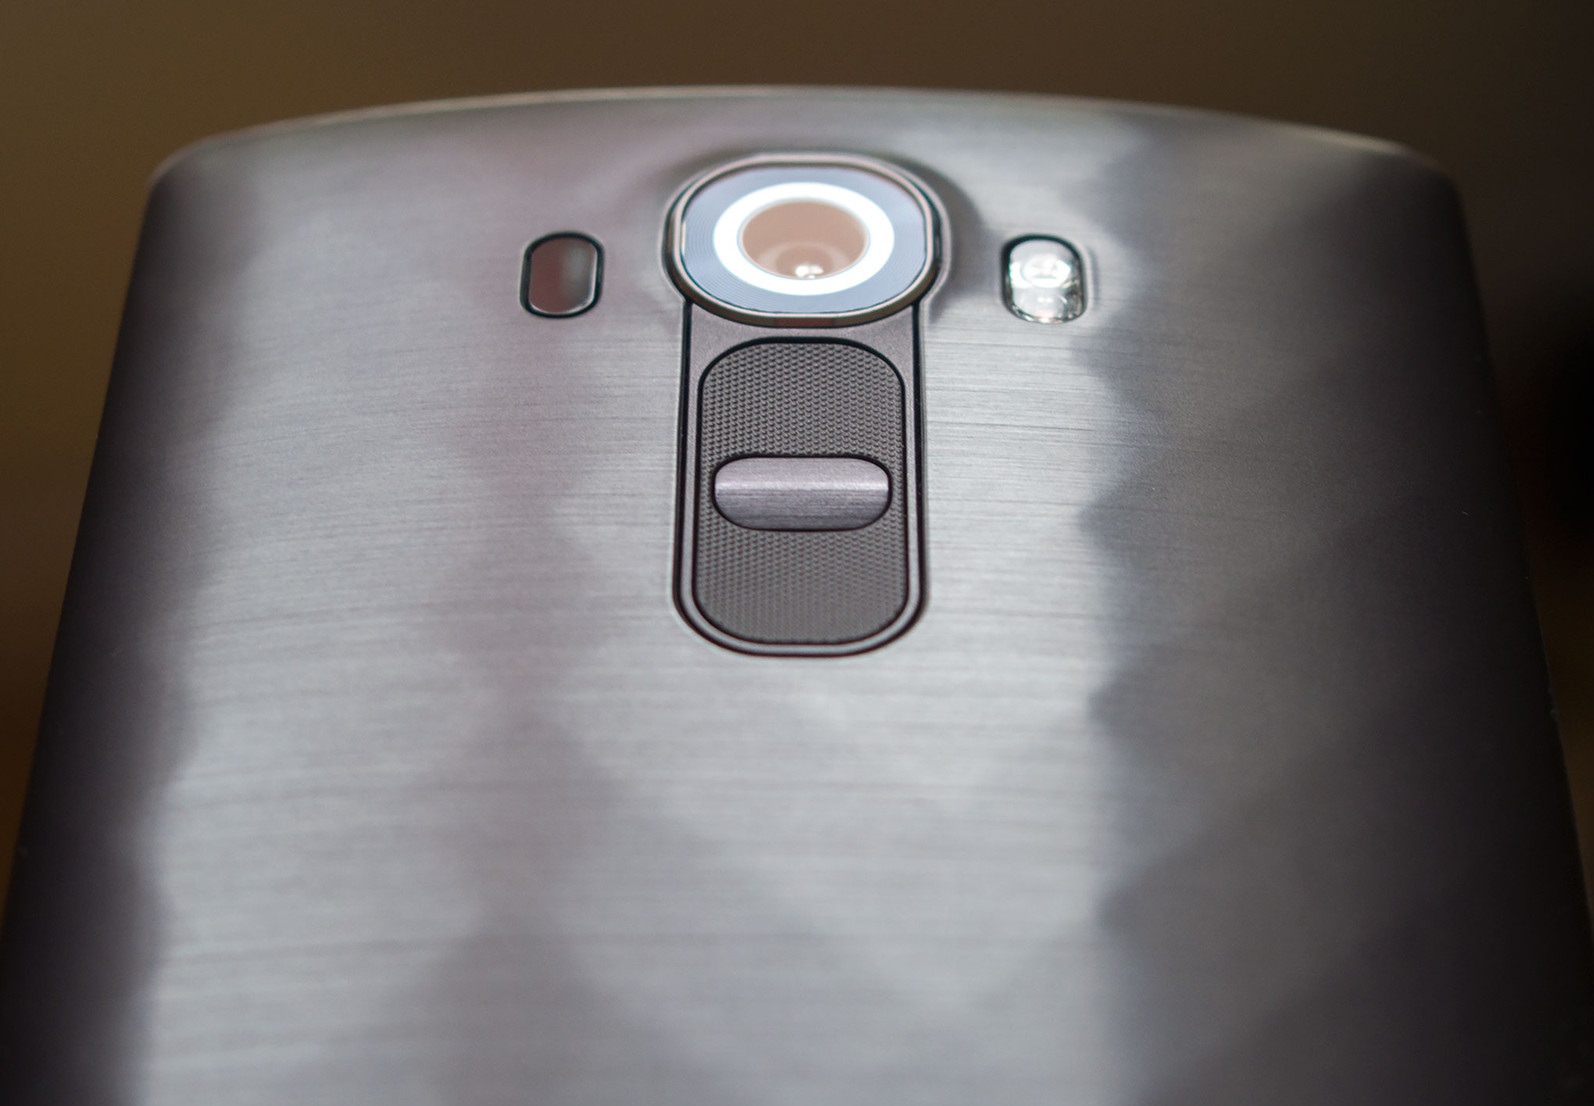 Советы и секреты камеры LG G4 - не пренебрегайте простыми советами